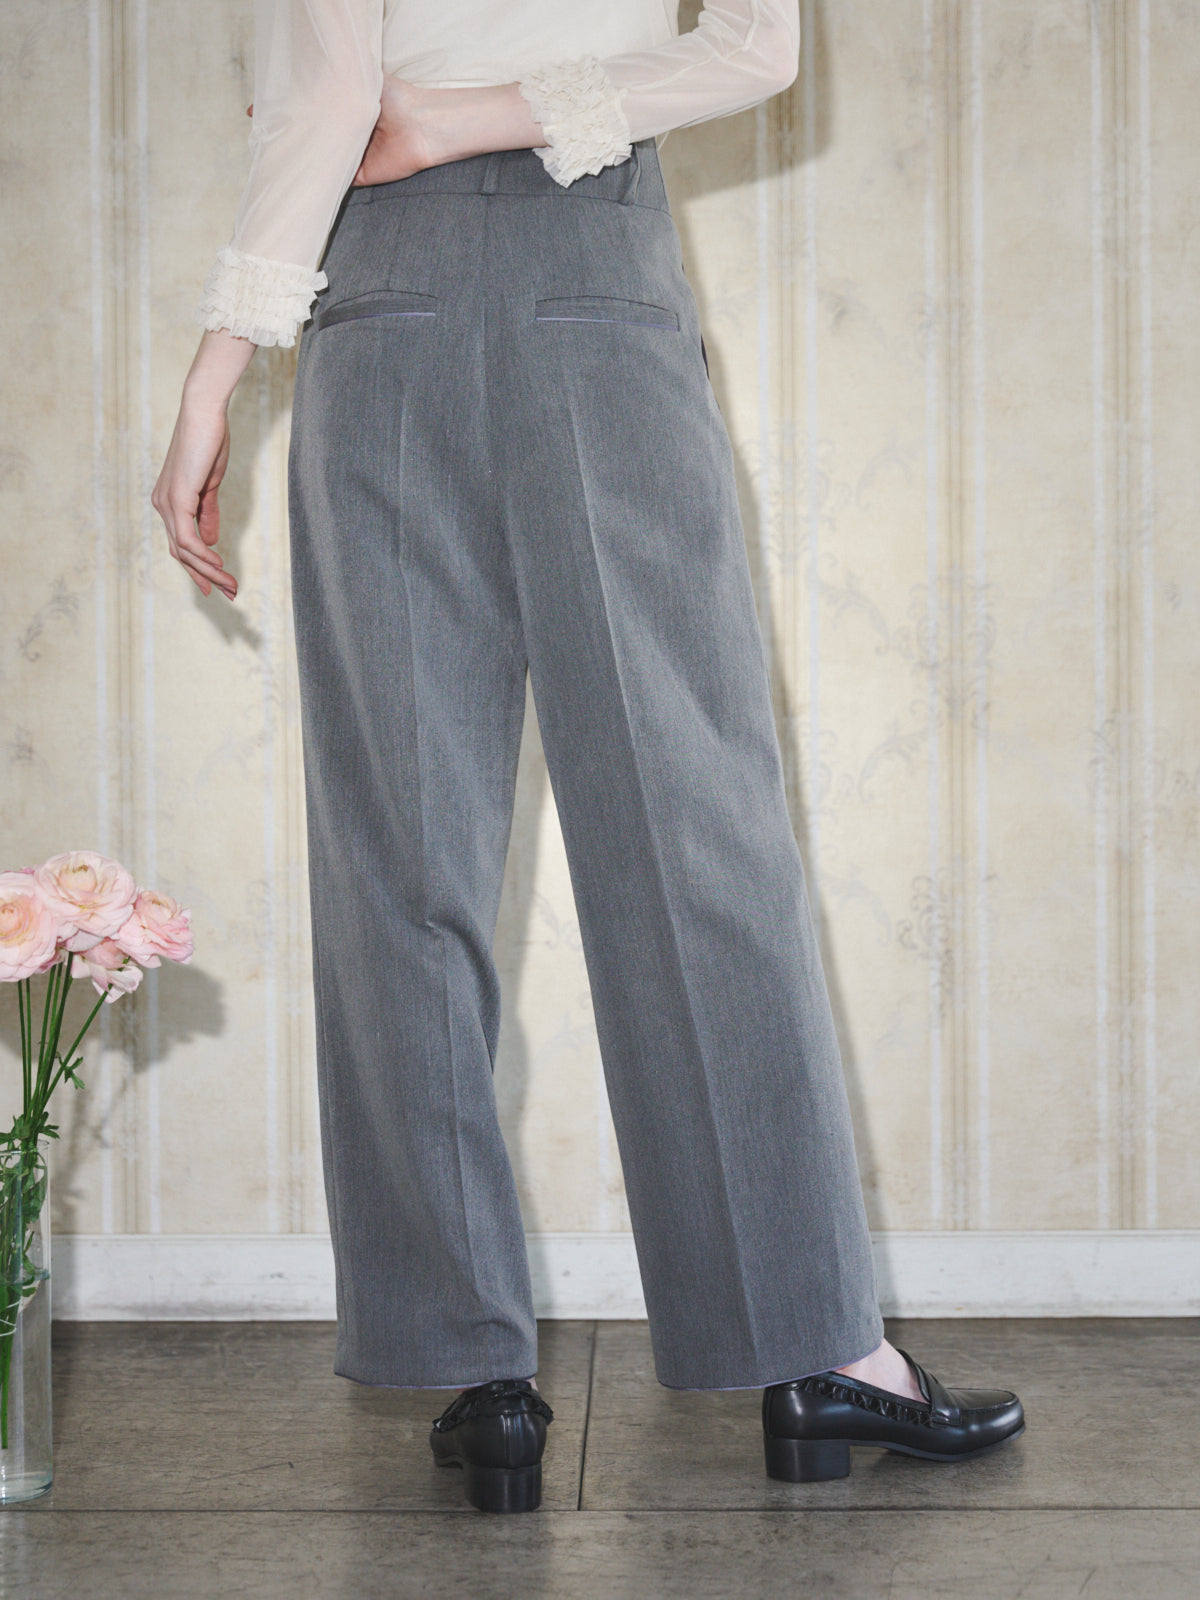 grise long pants